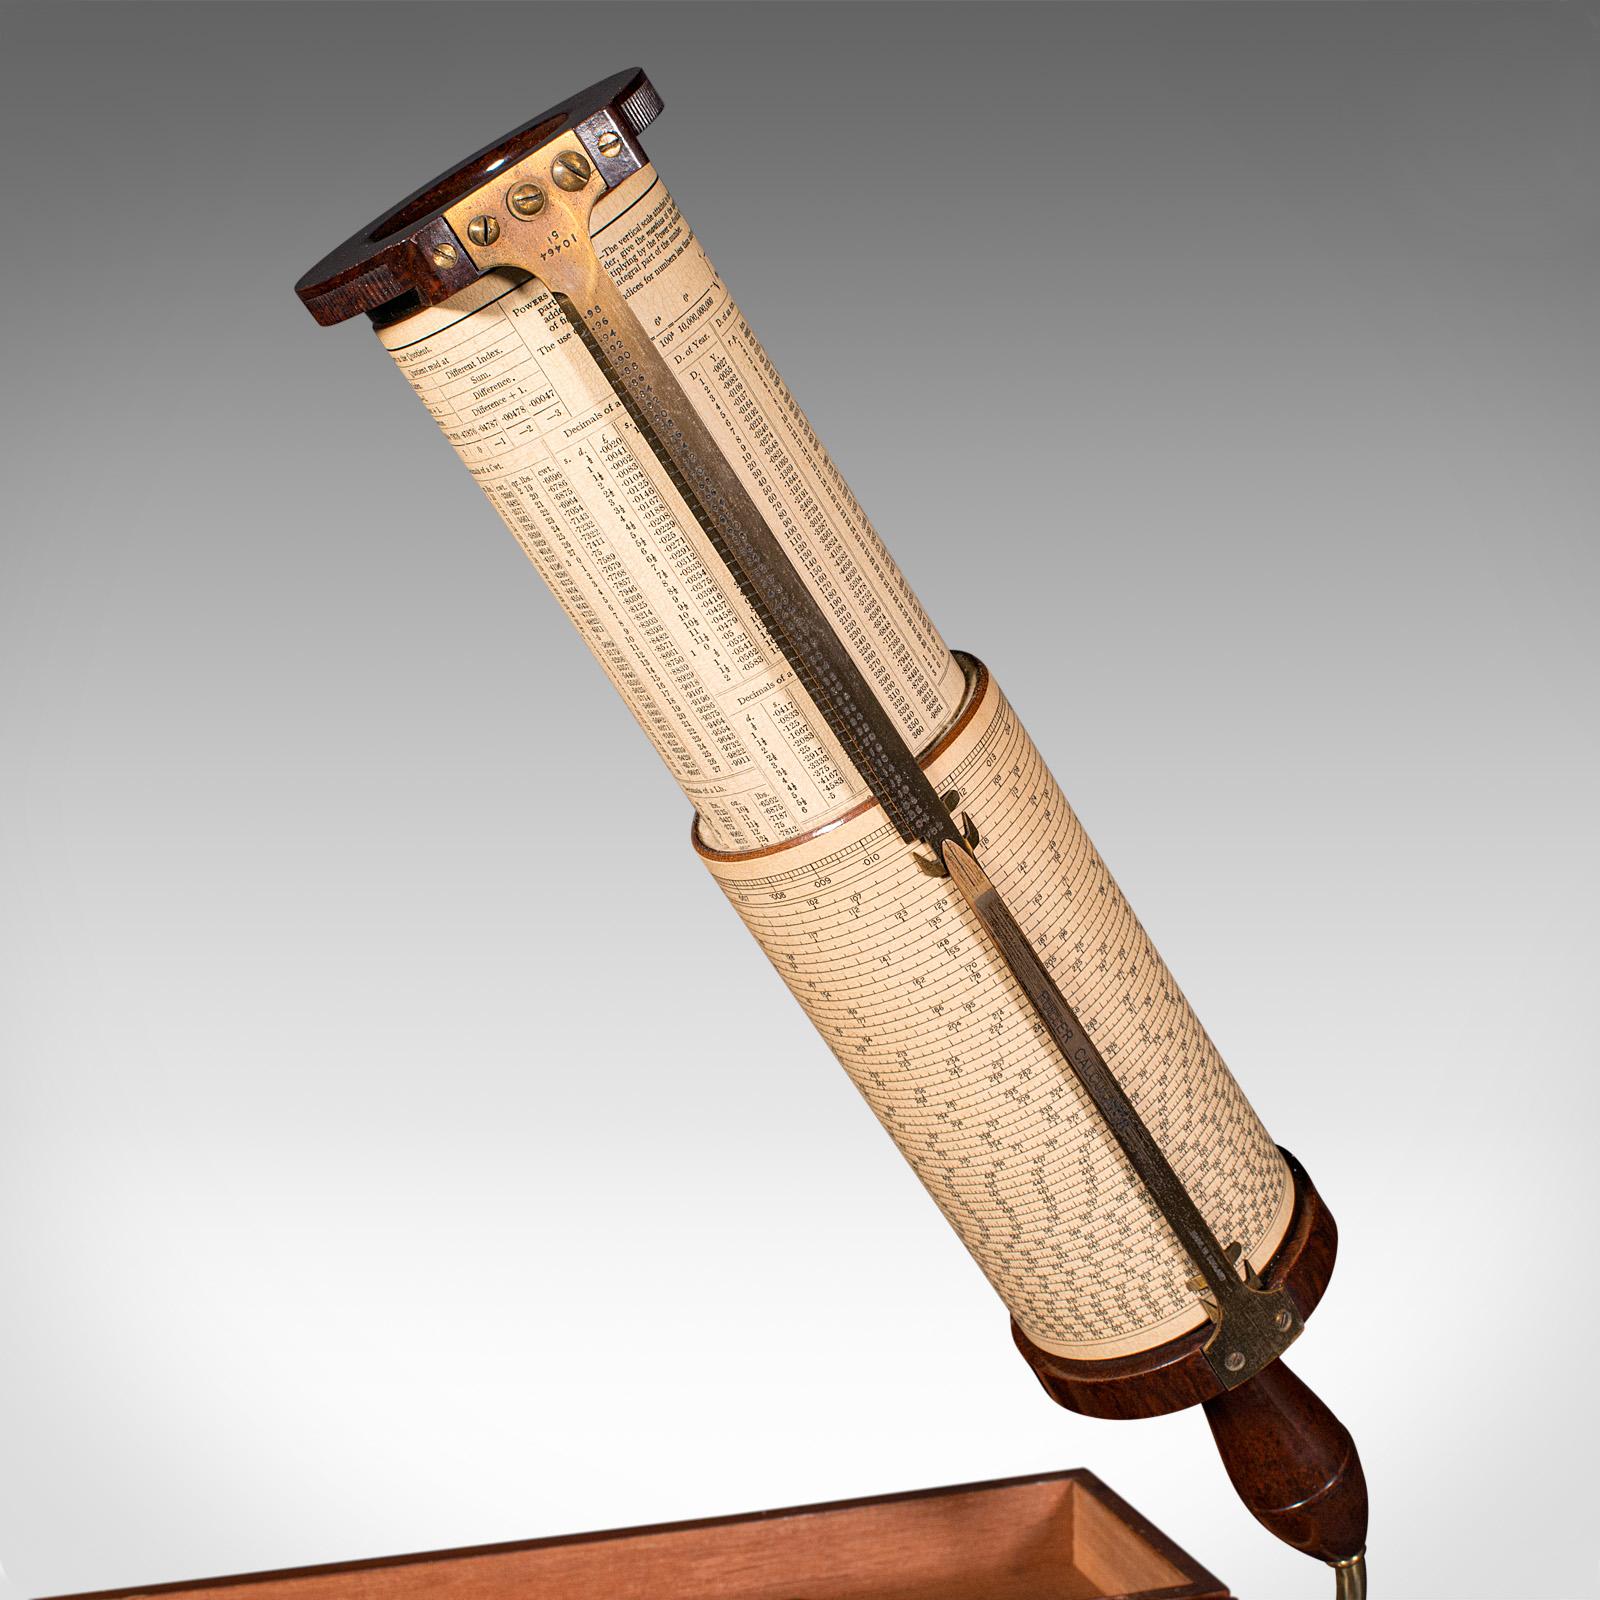 Il s'agit d'une calculatrice Fuller's vintage. Instrument mathématique anglais, en bakélite et boîtier en laiton, de Stanley of London, datant du milieu du 20e siècle, vers 1950.

Bel exemple de calculatrice cylindrique
Elle présente une patine